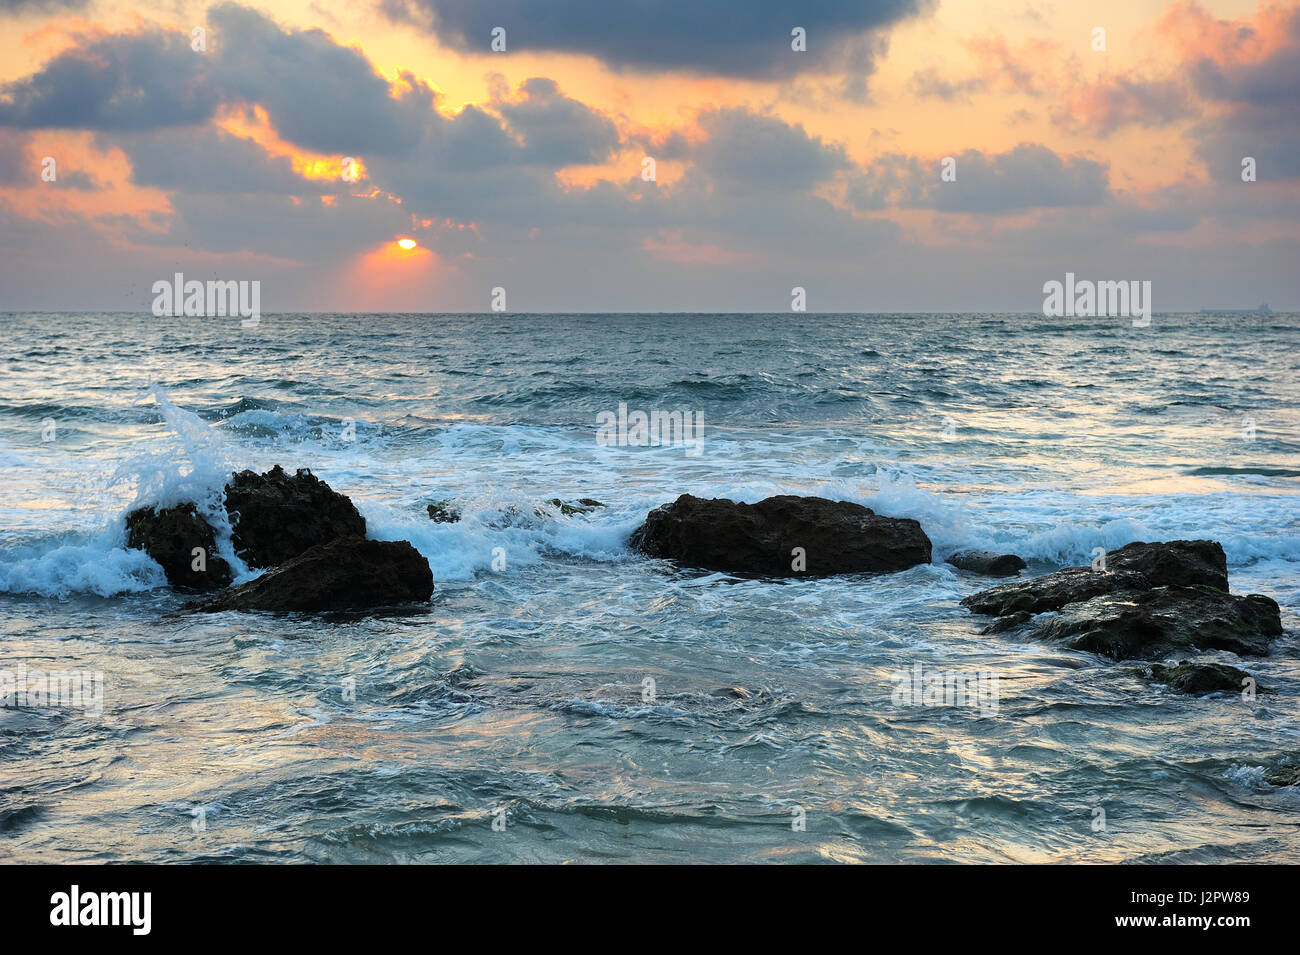 La côte méditerranéenne, dans le sud d'Israël près de la ville d'Ashkelon Banque D'Images